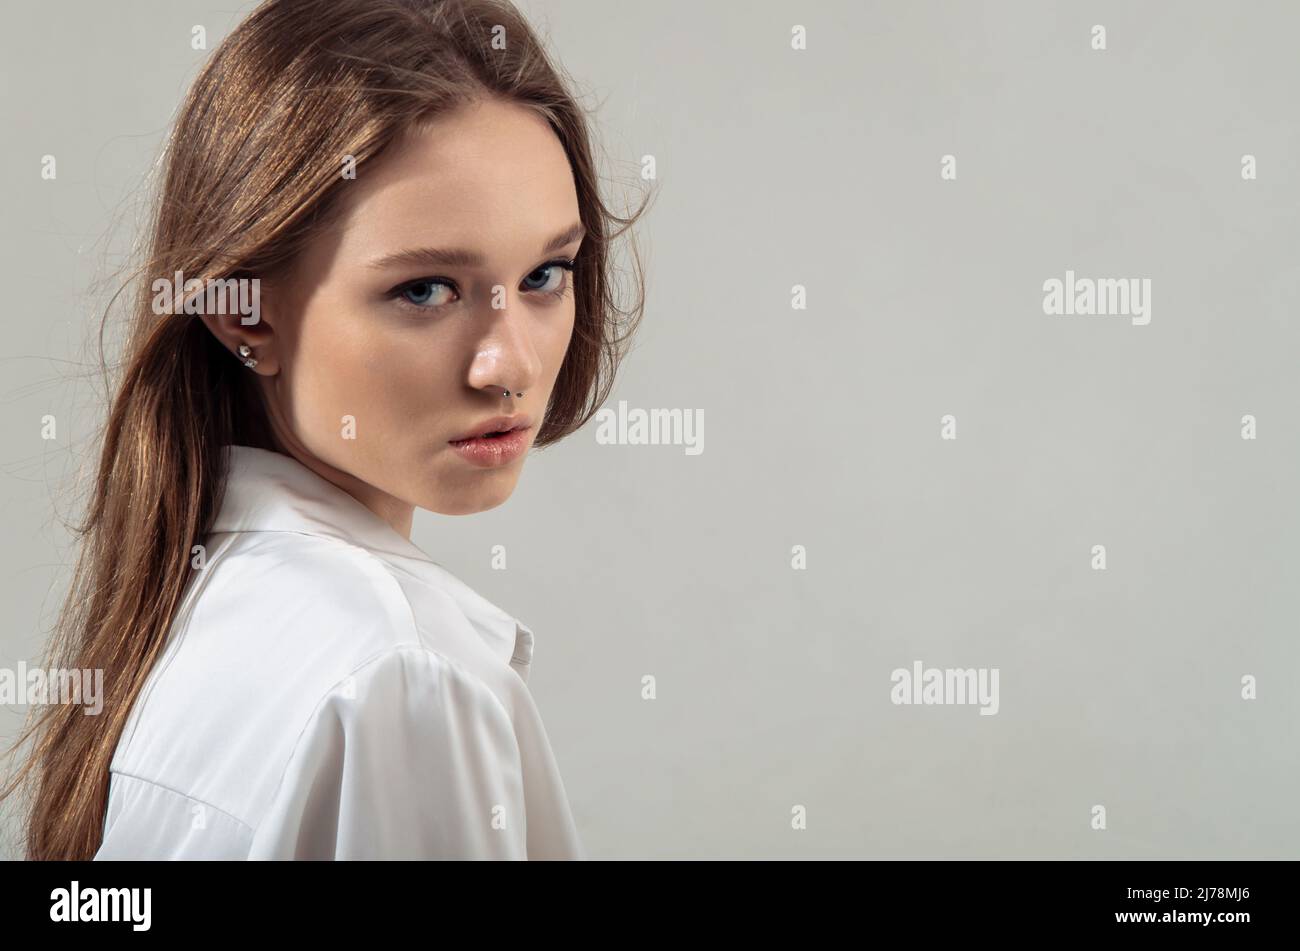 Porträt einer anspruchsvollen jungen Frau, die Produkte und Dienstleistungen anwirbt. Stockfoto